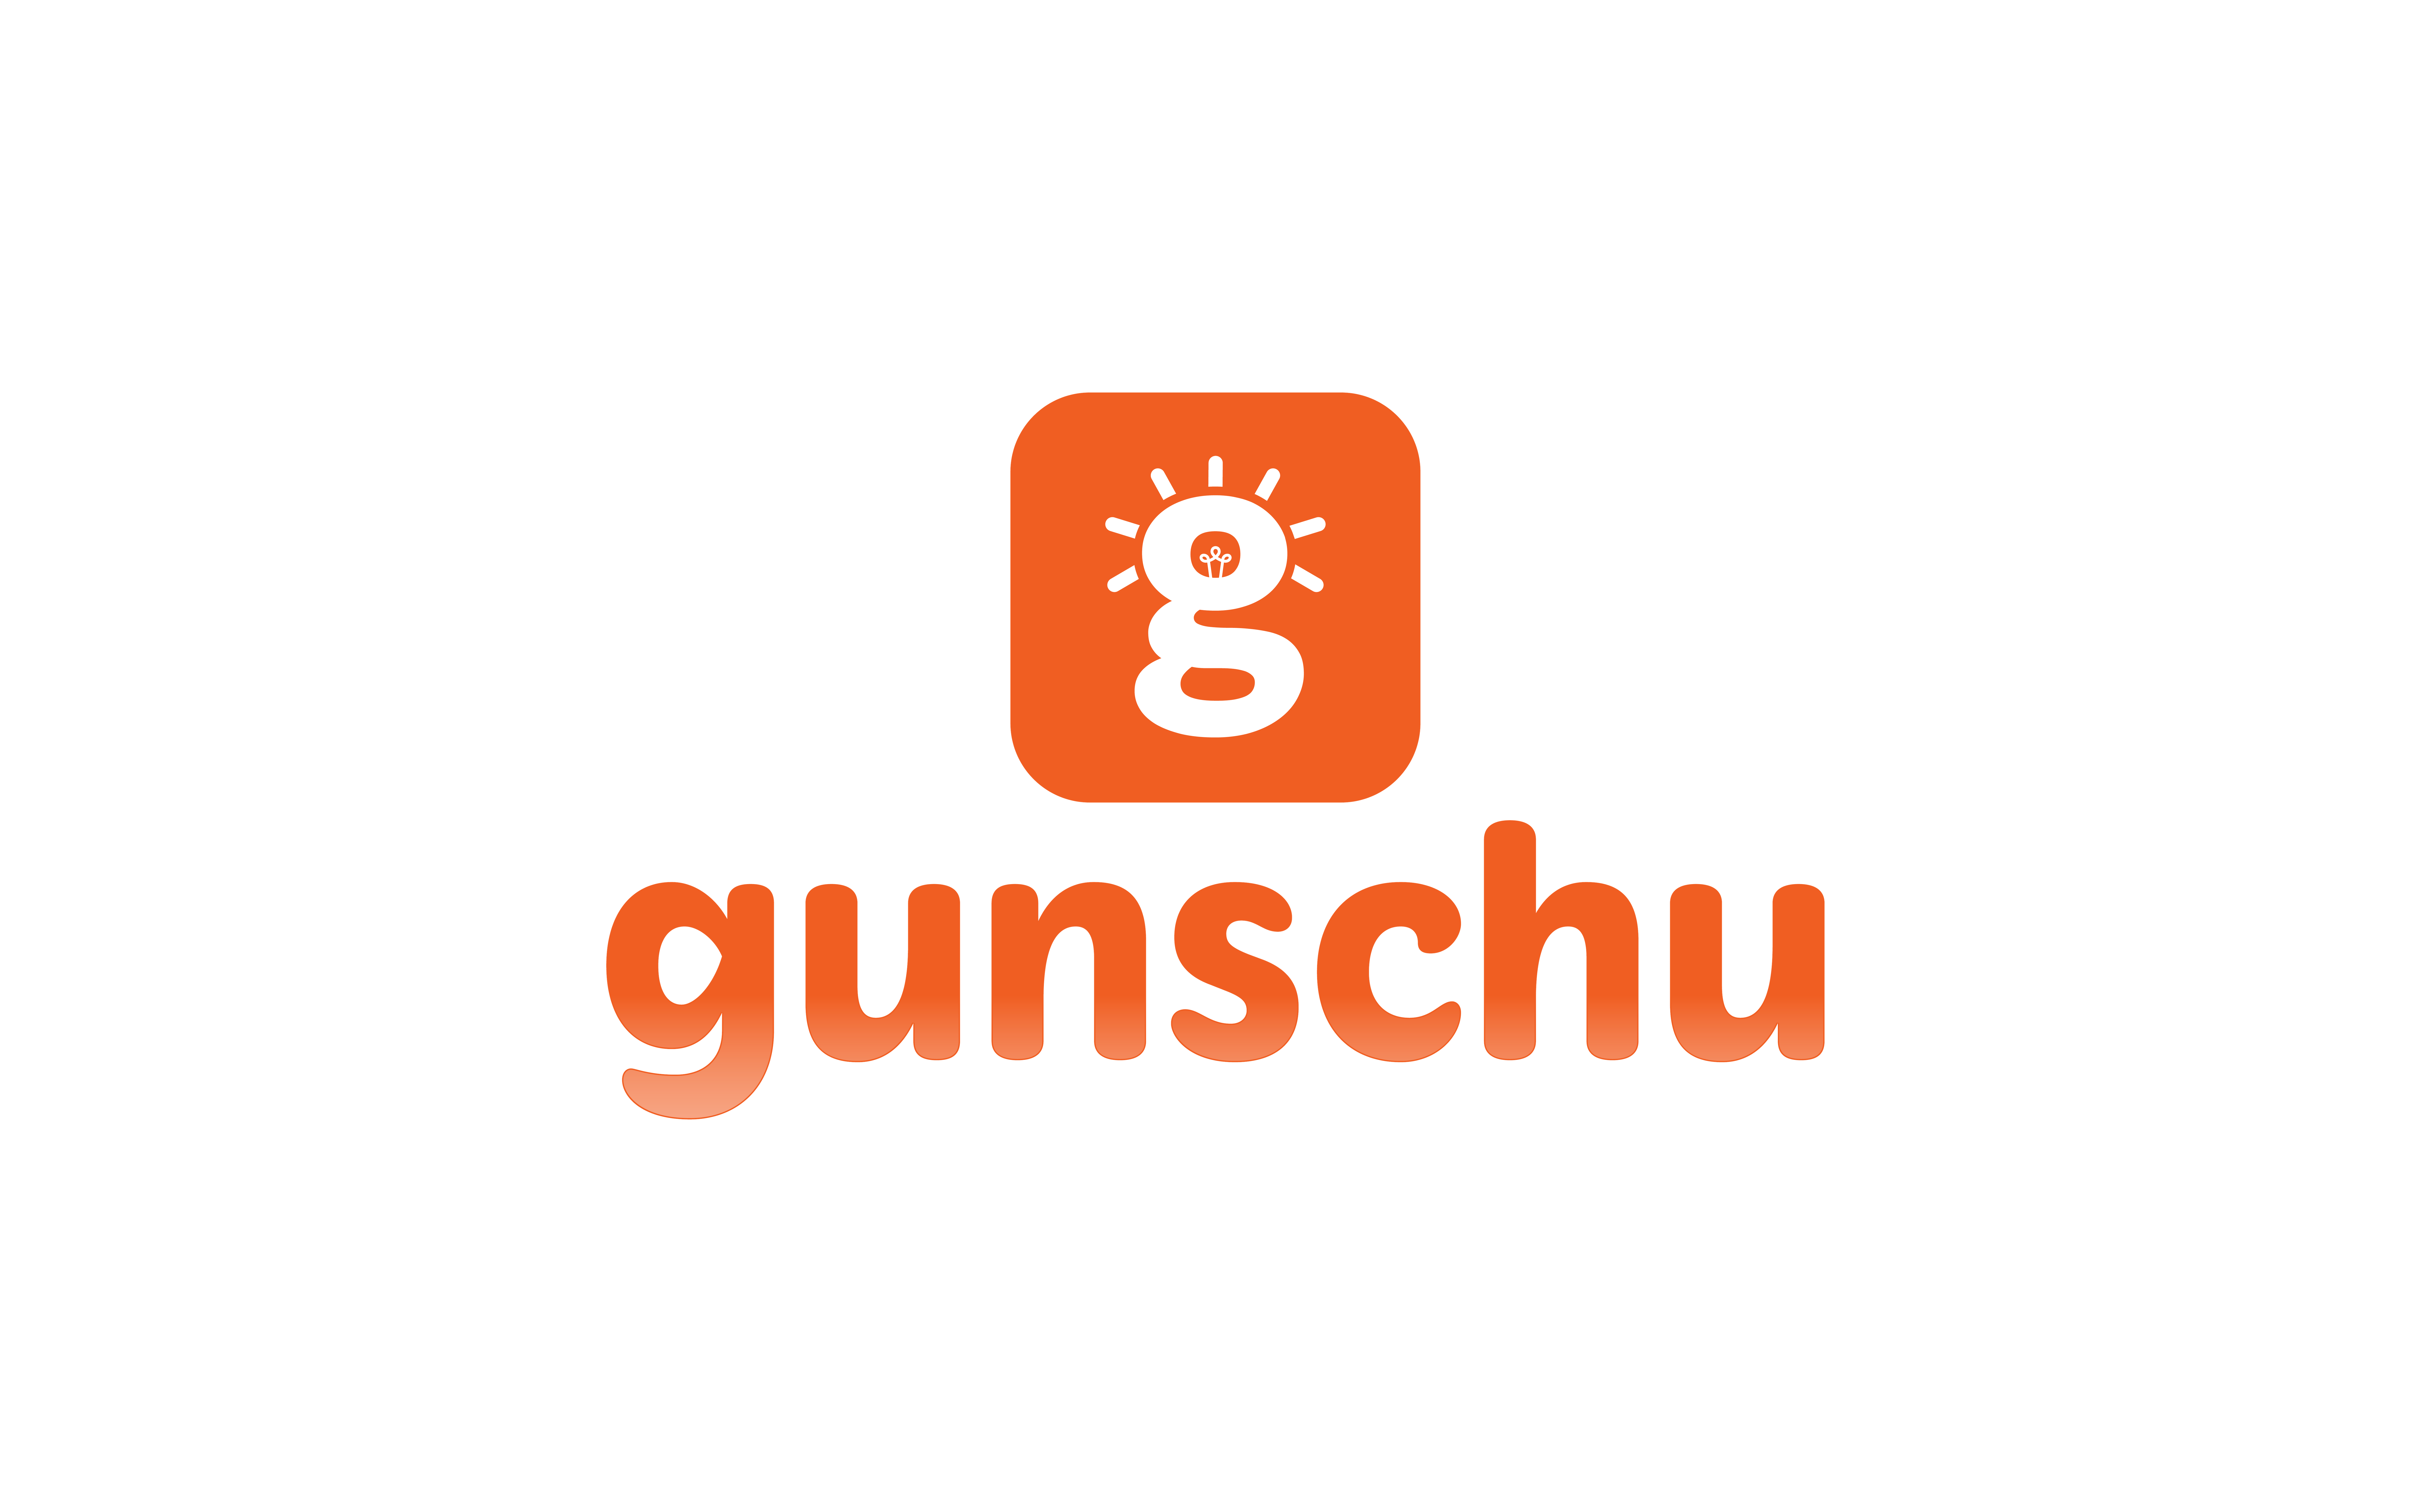 Gunschu Coaching and Career Guidance 